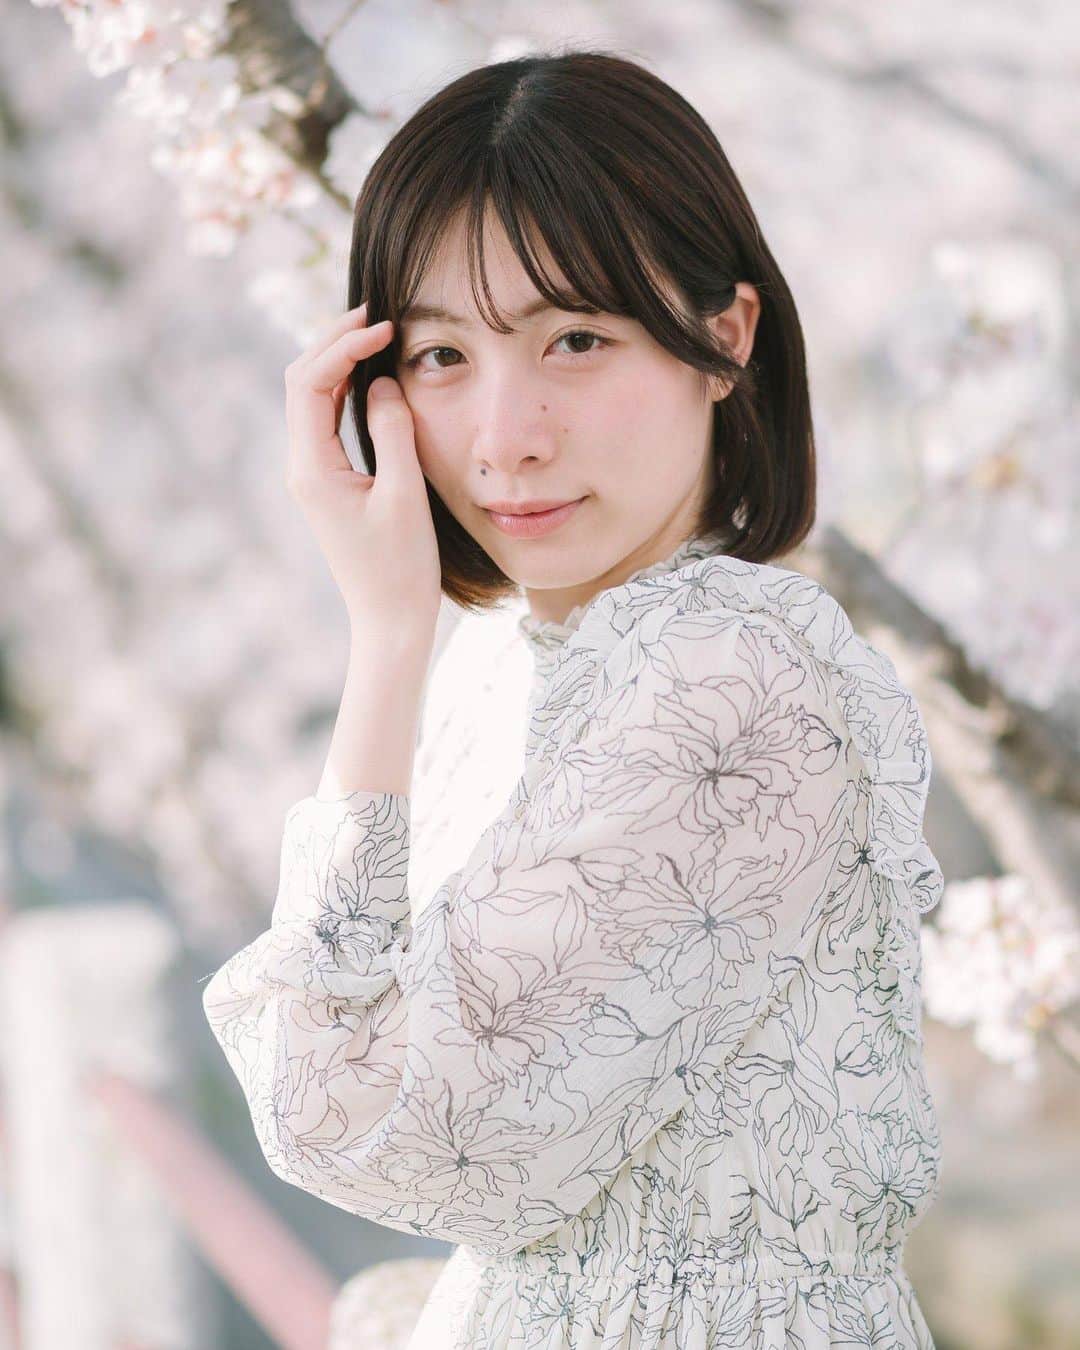 ワンサイド福岡のインスタグラム：「model：ゆな @yunacheona  photo by： @akikuma2016  . . 満開の桜の中でポートレート撮影できて良かったです！ 今年も桜ポートレート撮影会にご参加頂きましたカメラマン様ありがとうございました。 . . ワンサイド福岡ではポートレート撮影会に出演して下さる方を募集しております。 ポートレートモデル未経験の方でも大丈夫。 詳しくは「ワンサイド福岡」のホームページをご覧ください。 . . . #福岡市 #福岡撮影会  #ワンサイド福岡  #撮影会モデル  #福岡被写体  #ポートレートモデル  #ポートレート撮影  #ポートレートしま専科  #福岡モデル  #モデル撮影会  #ワンサイド撮影会 #福岡ポートレート  #福岡カメラ部  #写真撮ってる人と繋がりたい  #カメラマンさんと繋がりたい  #ポートレート好きな人と繋がりたい  #カメラ好きな人と繋がりたい  #ファインダー越しの私の世界  #何気ない瞬間を残したい  #ポトレ撮影隊  #ポトレのセカイ  #被写体募集中  #カメラマンさん募集  #被写体になります  #被写体希望  #撮影会モデル募集  #モデル募集  #被写体撮影  #福岡被写体募集」